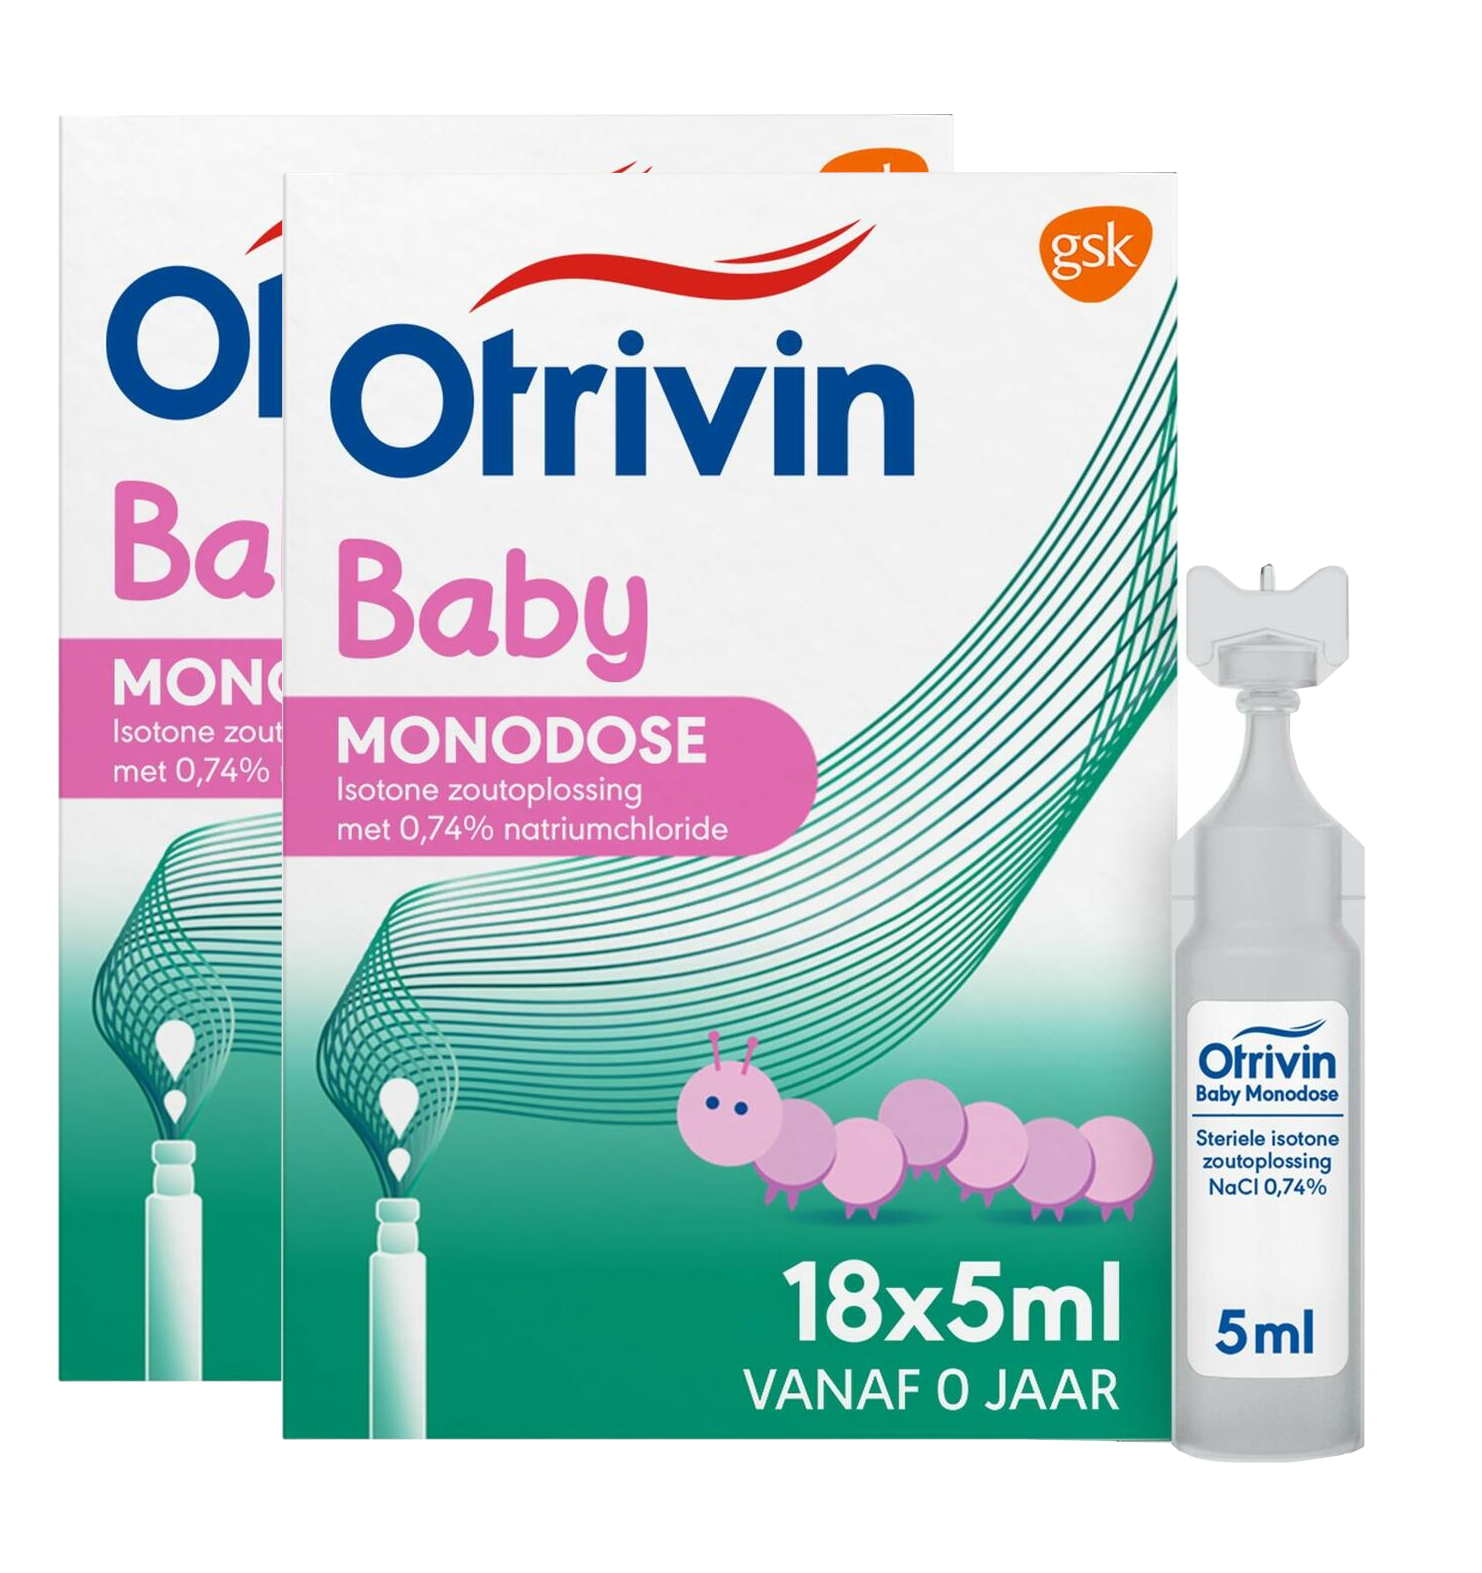 Image of Otrivin Baby Monodose Duo 